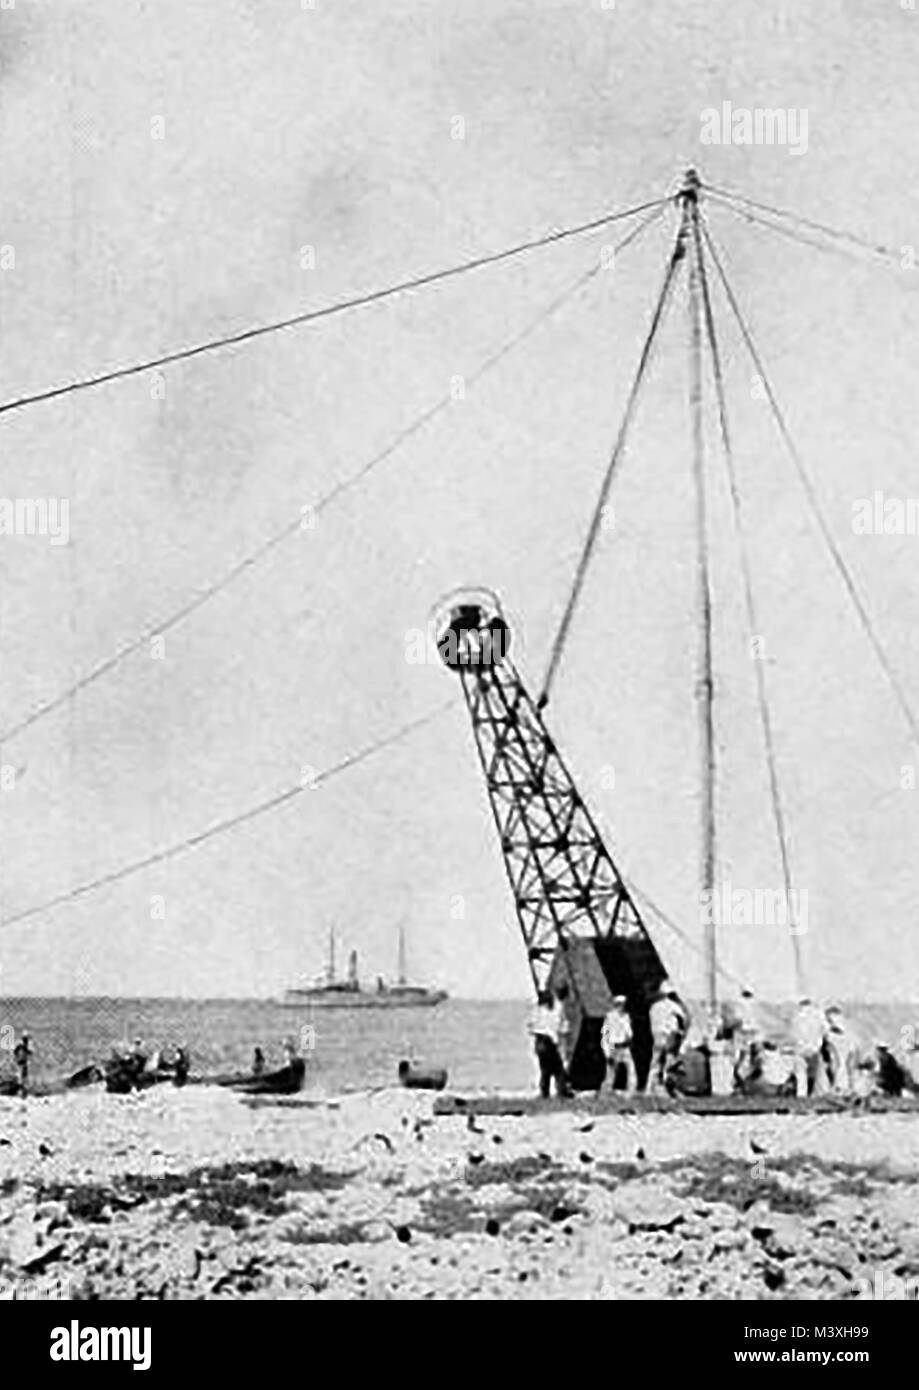 American - Leuchttürme - Bau der Amerikanischen - Leuchttürme - Bau der Livingstone Kanal Licht Grundlagen in ein Kästlein dam 1923 Stockfoto